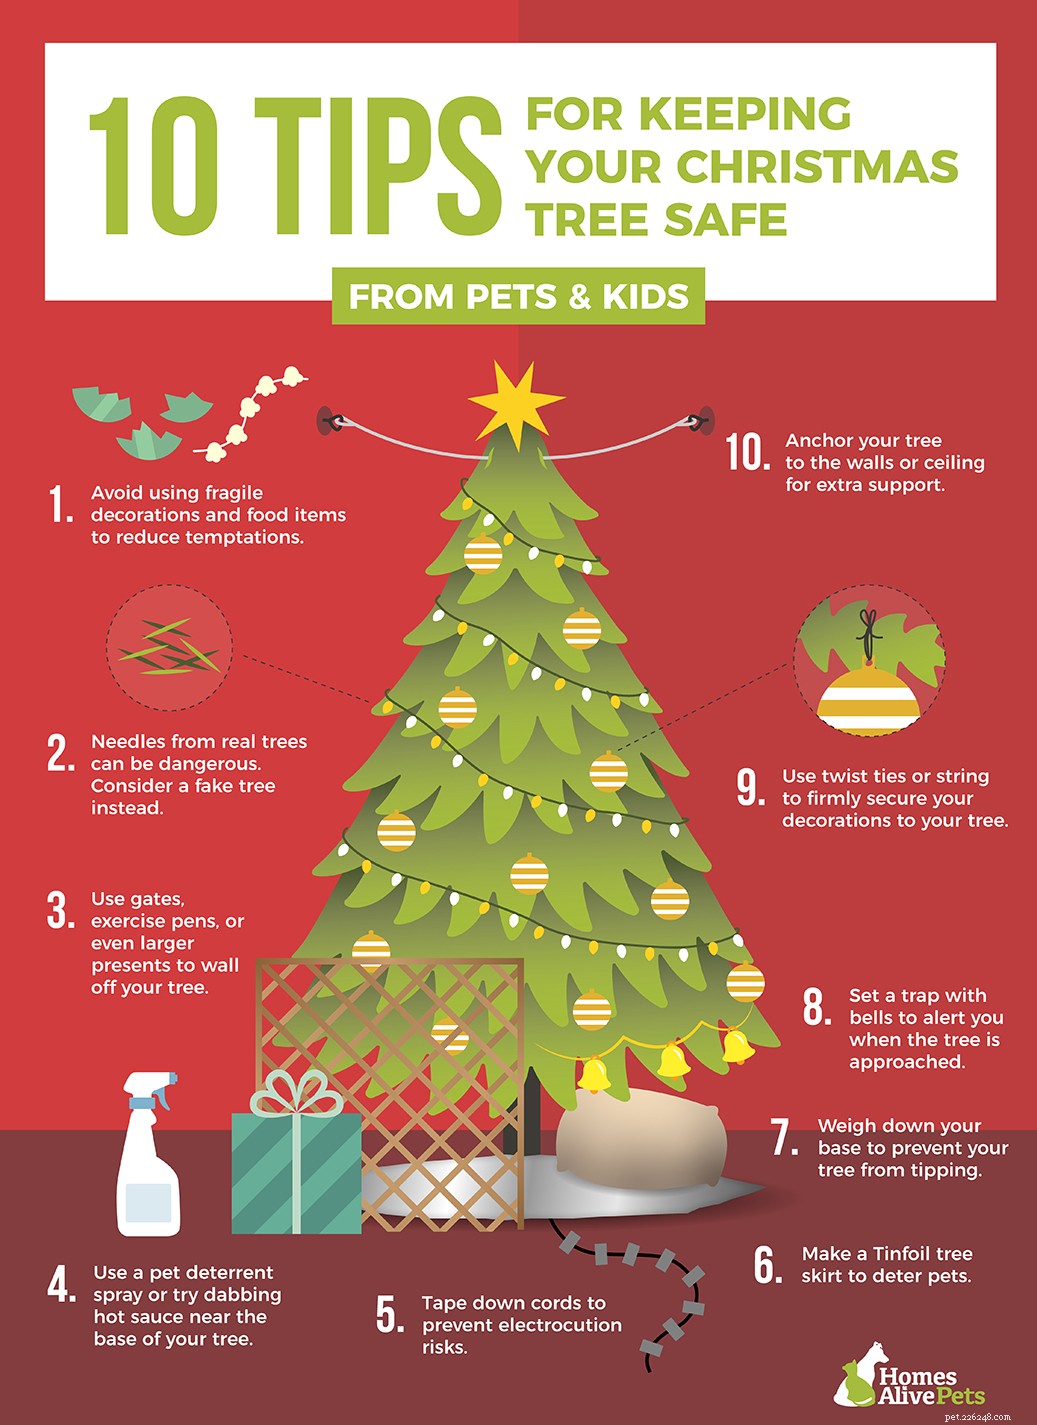 10 советов, как держать собаку подальше от рождественской елки